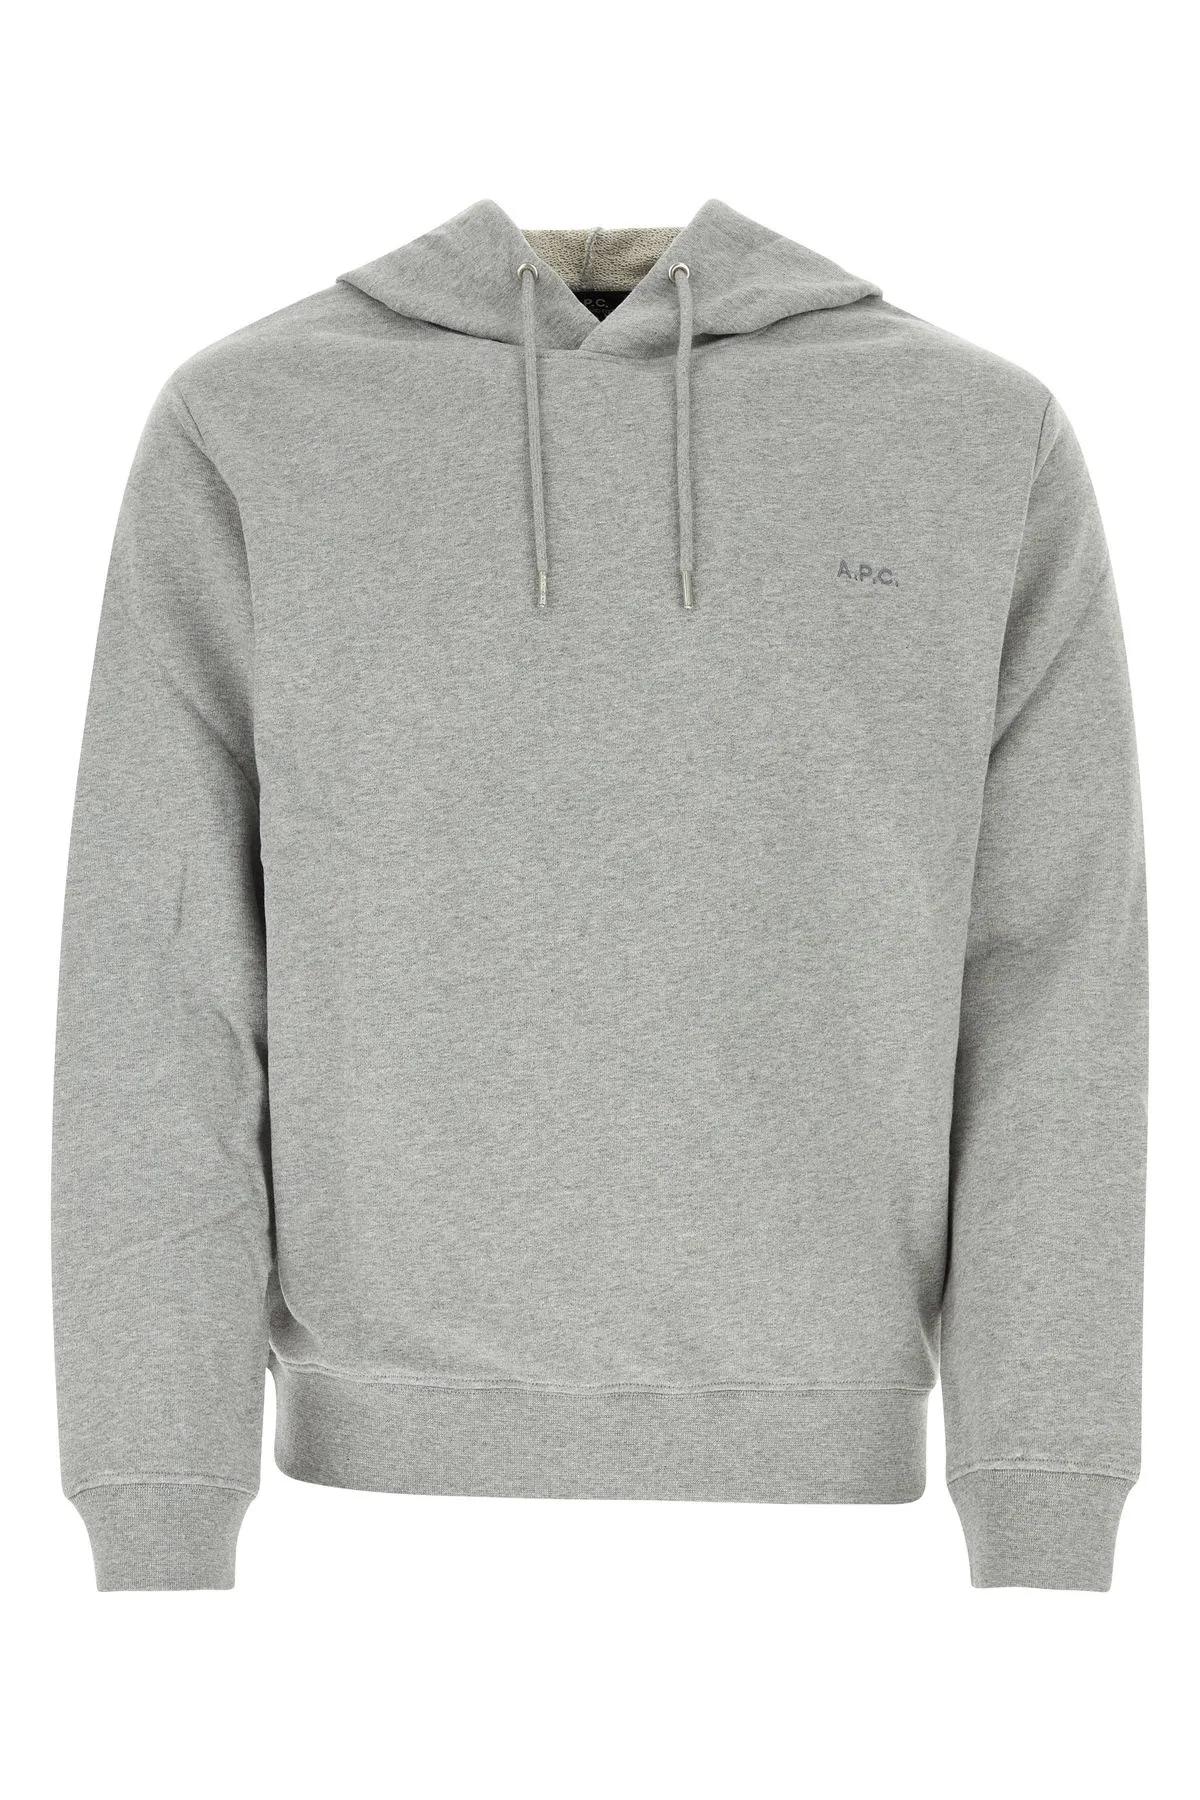 Apc Grey Cotton Sweatshirt In Gray